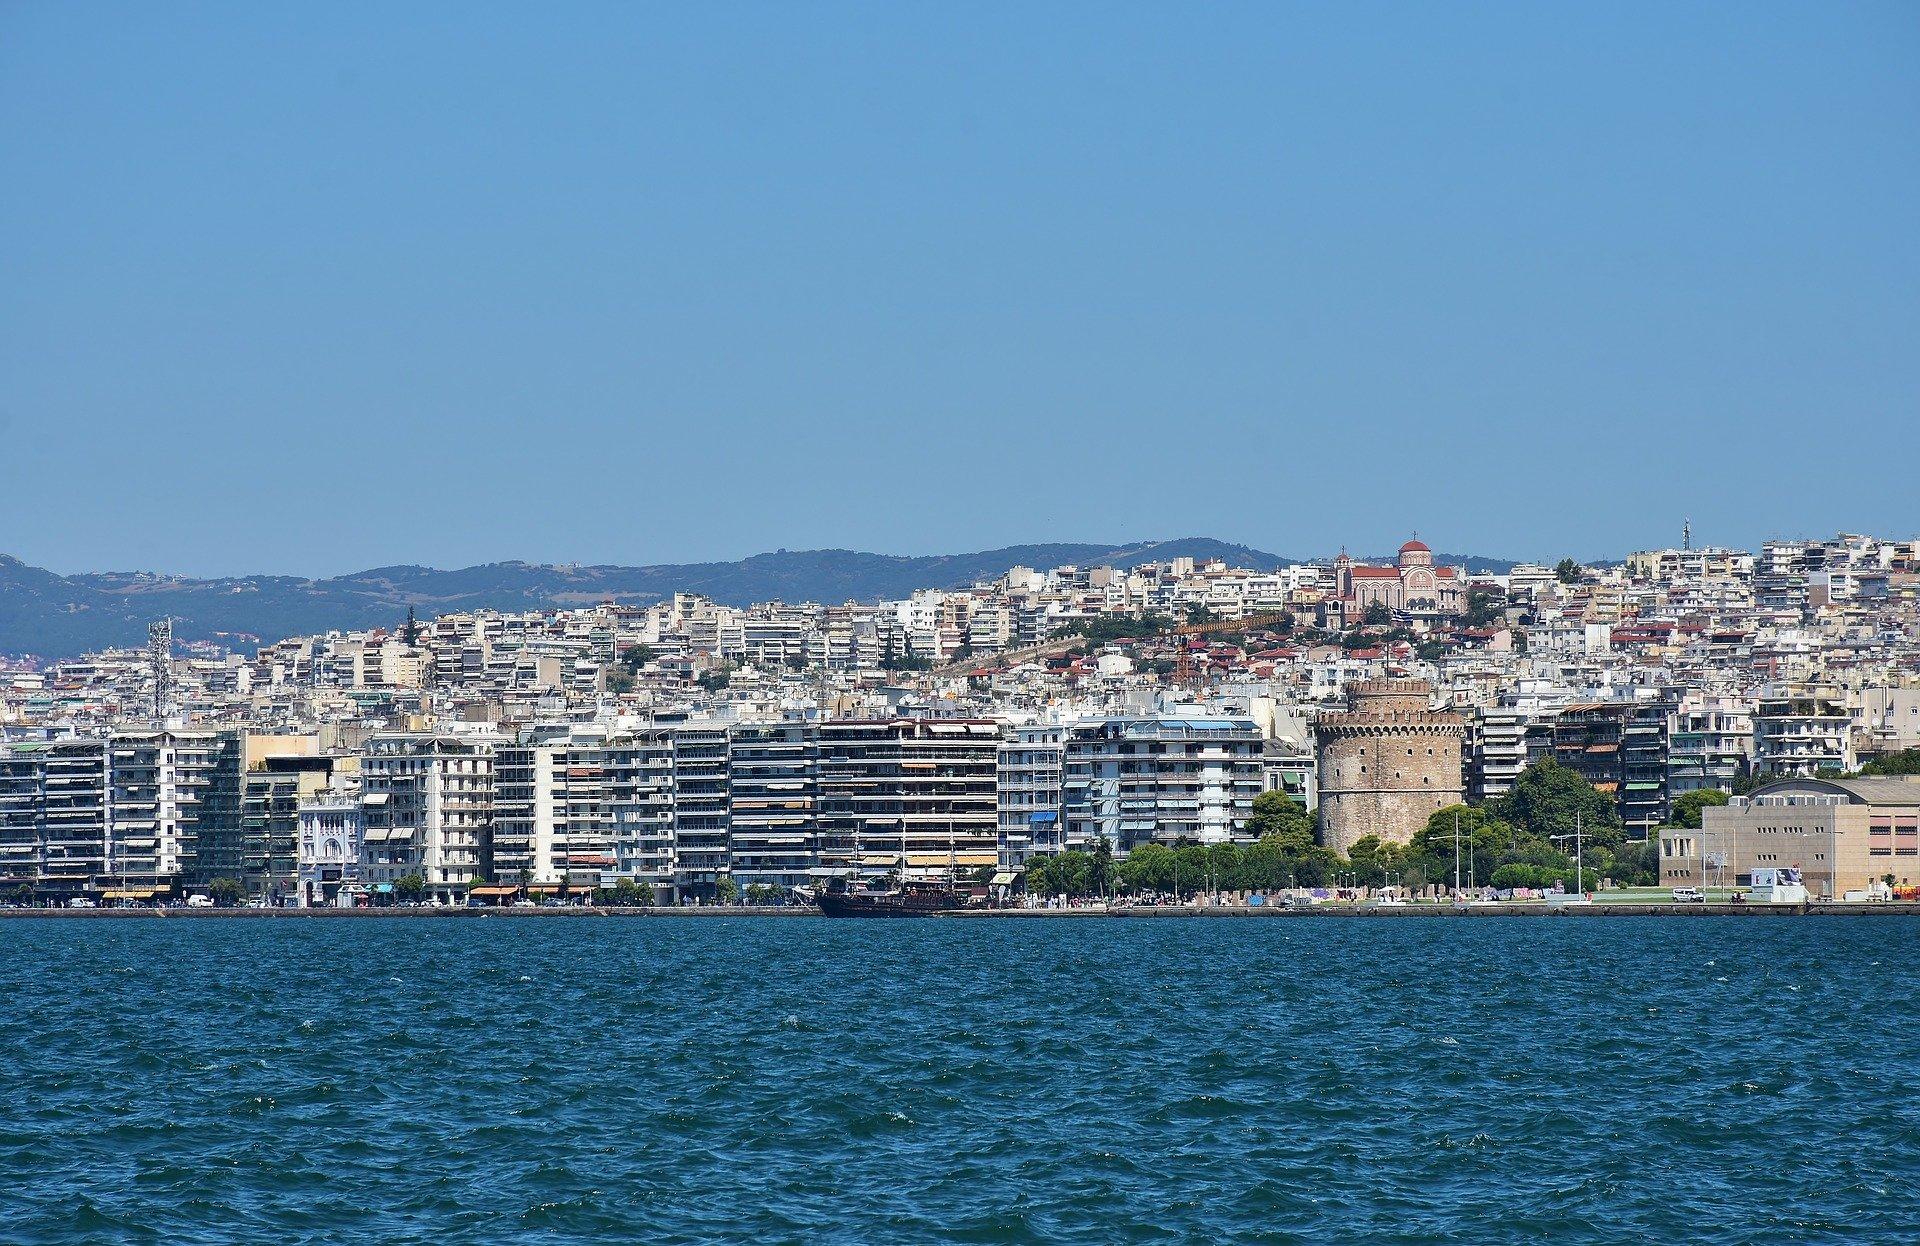 Θεσσαλονίκη | 5 ποιήματα για την πόλη που αγαπάμε